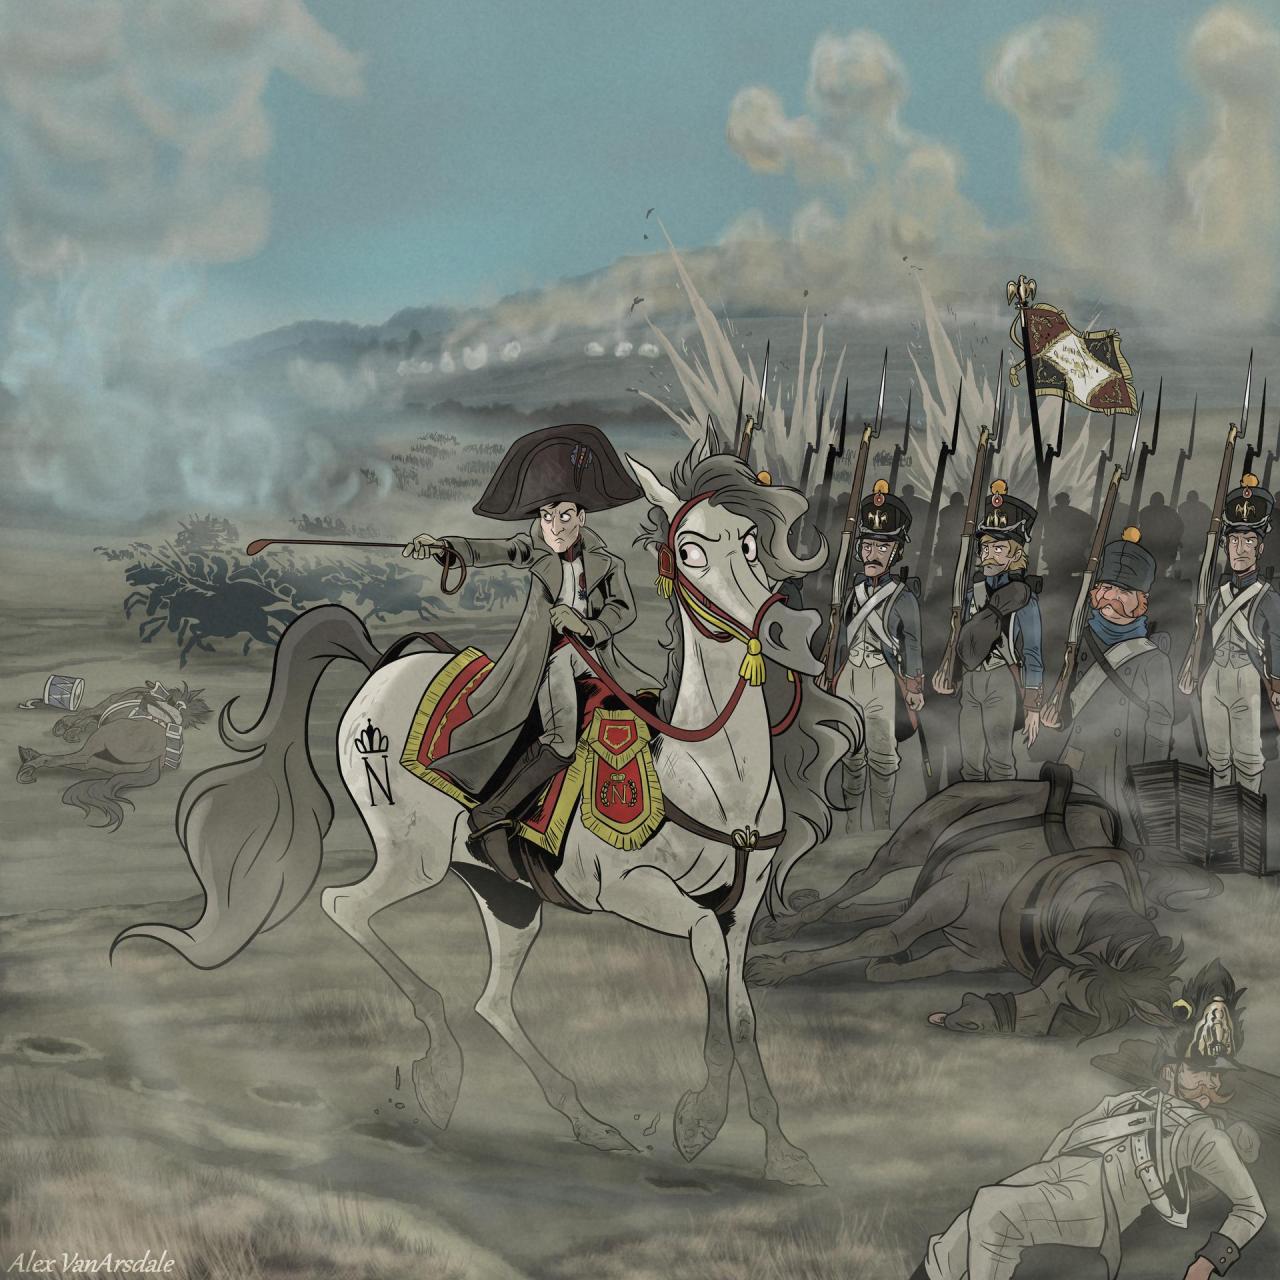 Battle Of Austerlitz Wallpapers